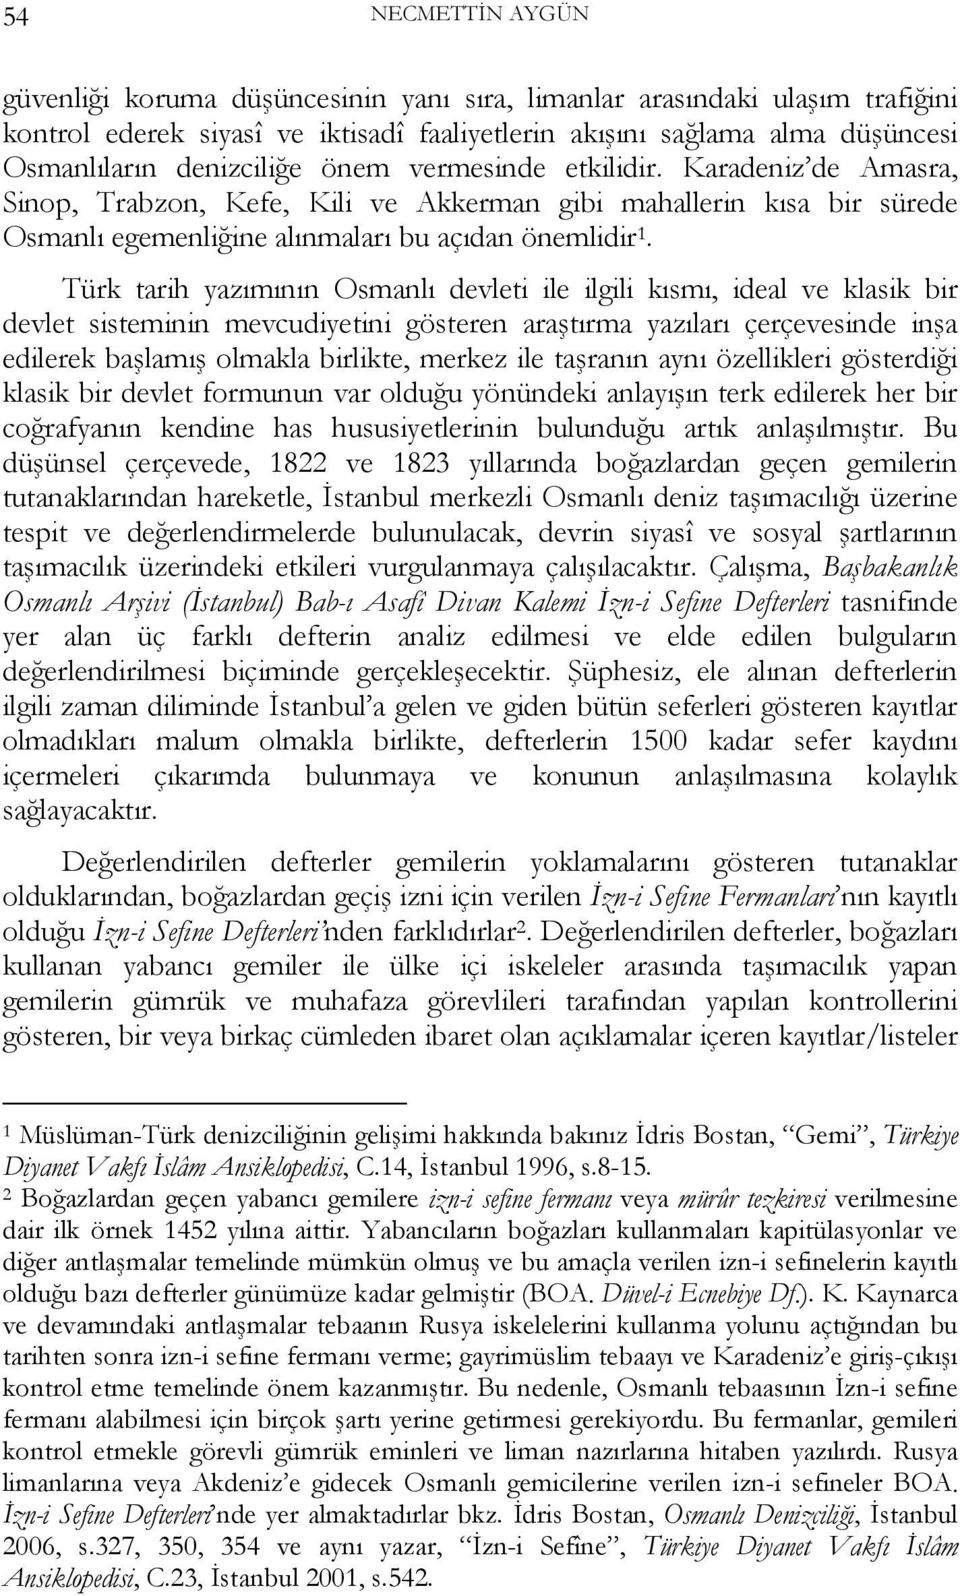 Türk tarih yazımının Osmanlı devleti ile ilgili kısmı, ideal ve klasik bir devlet sisteminin mevcudiyetini gösteren araştırma yazıları çerçevesinde inşa edilerek başlamış olmakla birlikte, merkez ile